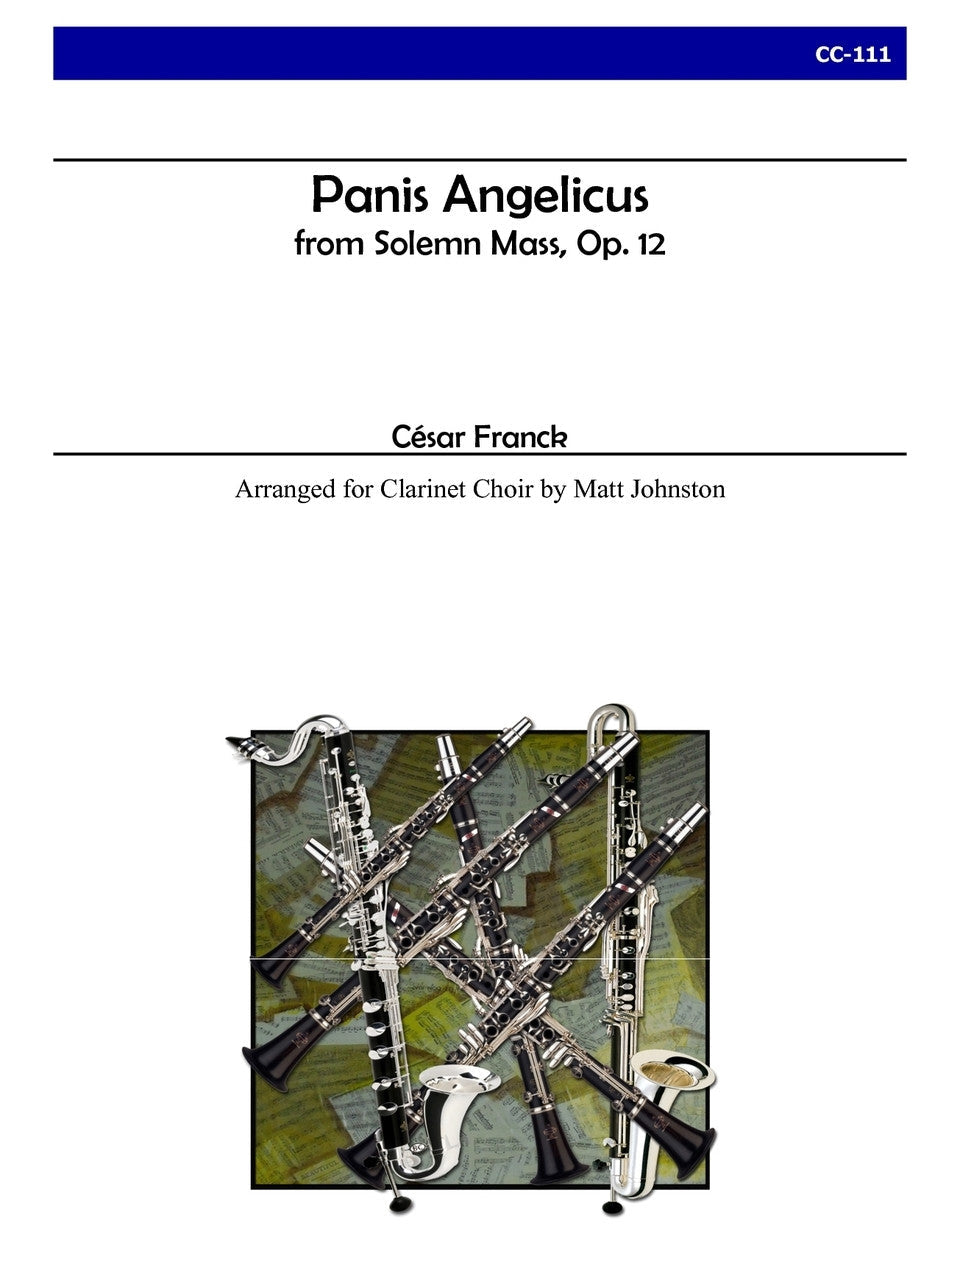 Franck (arr. Matt Johnston) - Panis Angelicus for Clarinet Choir